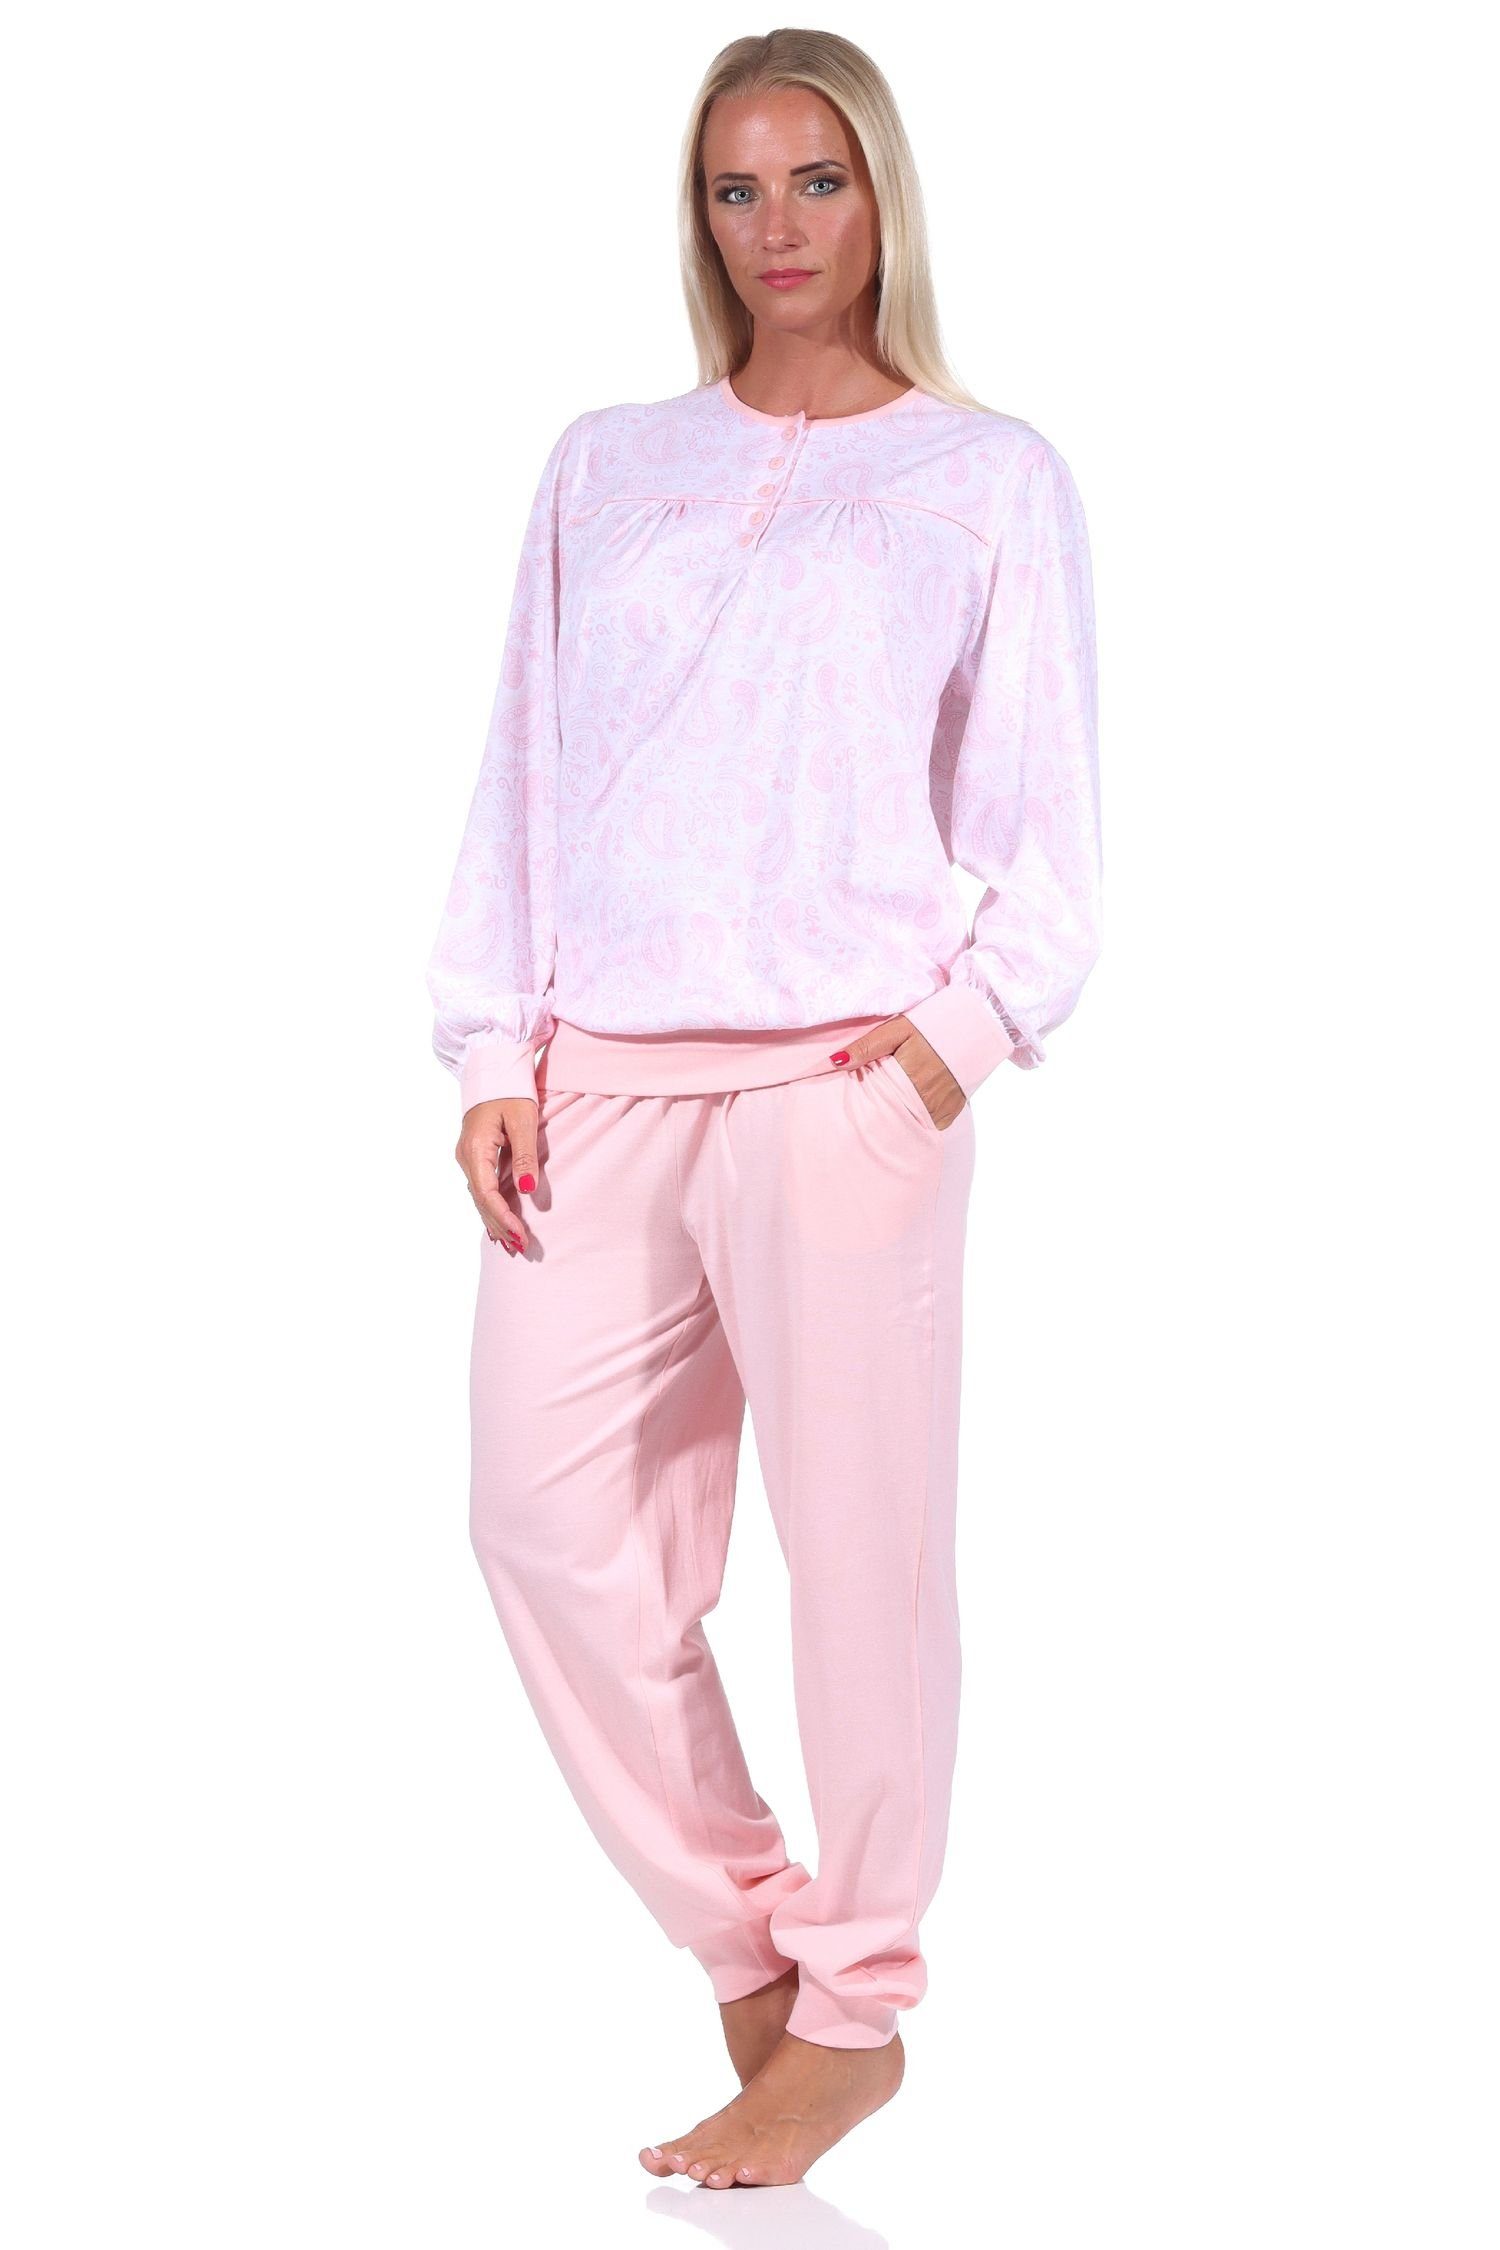 Damen Hals Bündchen + Schlafanzug am Design Knopfleiste rosa Paisley mit Pyjama Normann